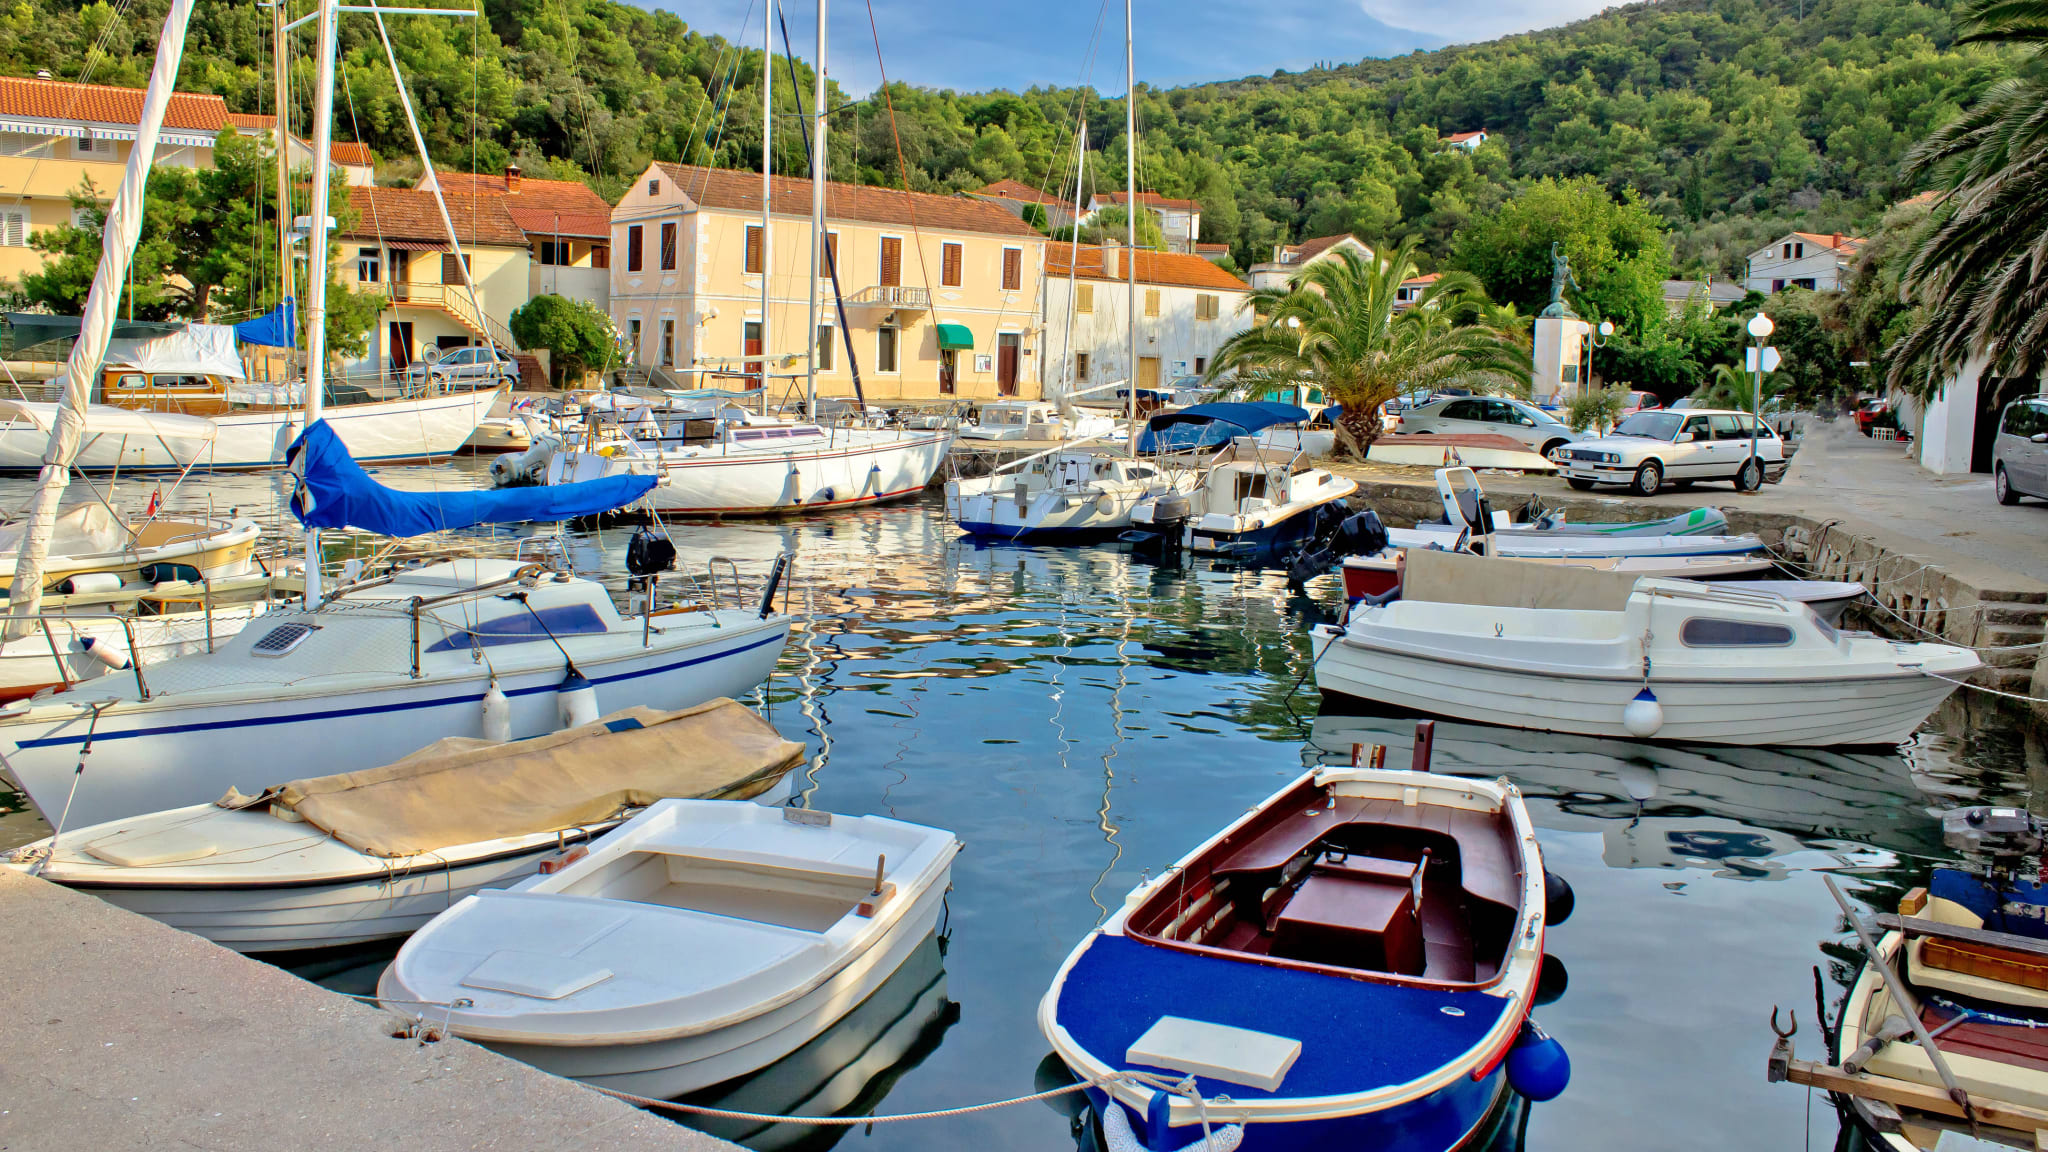 Hafen, Mali Iž, Insel Iz, Kroatien